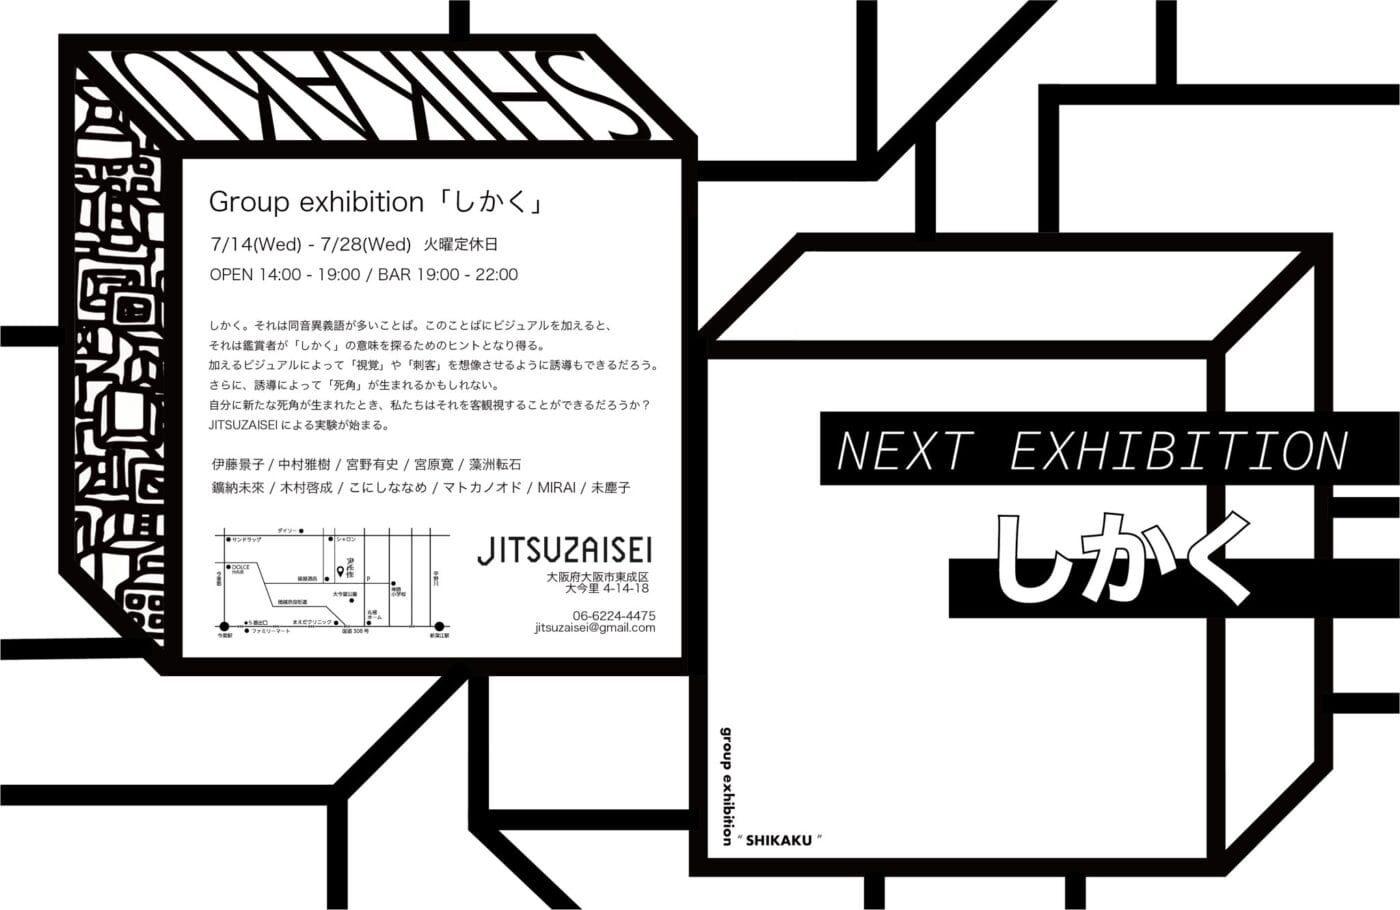 「しかく」がテーマのグループ展、JITSUZAISEIにて。さまざまな表現手法の11人のアーティストが出展。